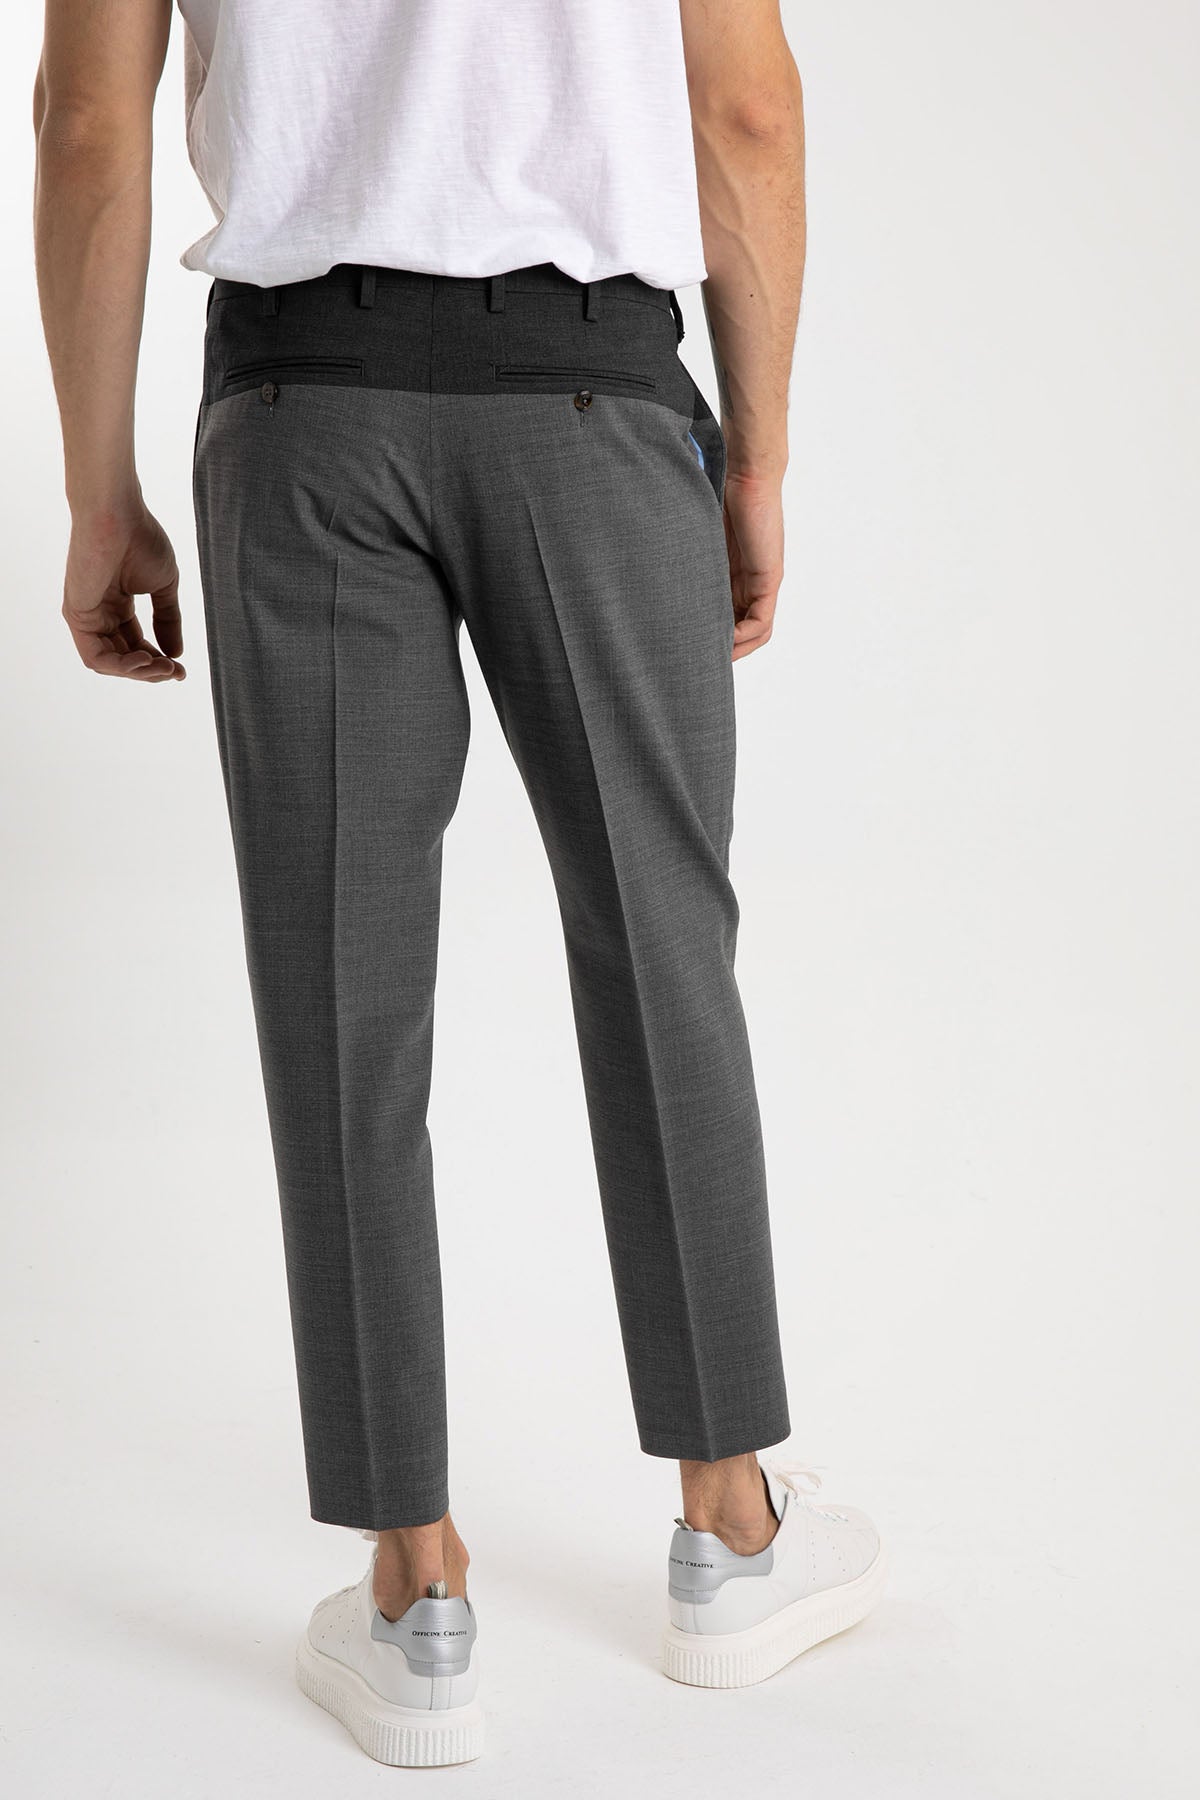 Pantaloni Torino Rebel Fit Yandan Cepli Pantolon-Libas Trendy Fashion Store